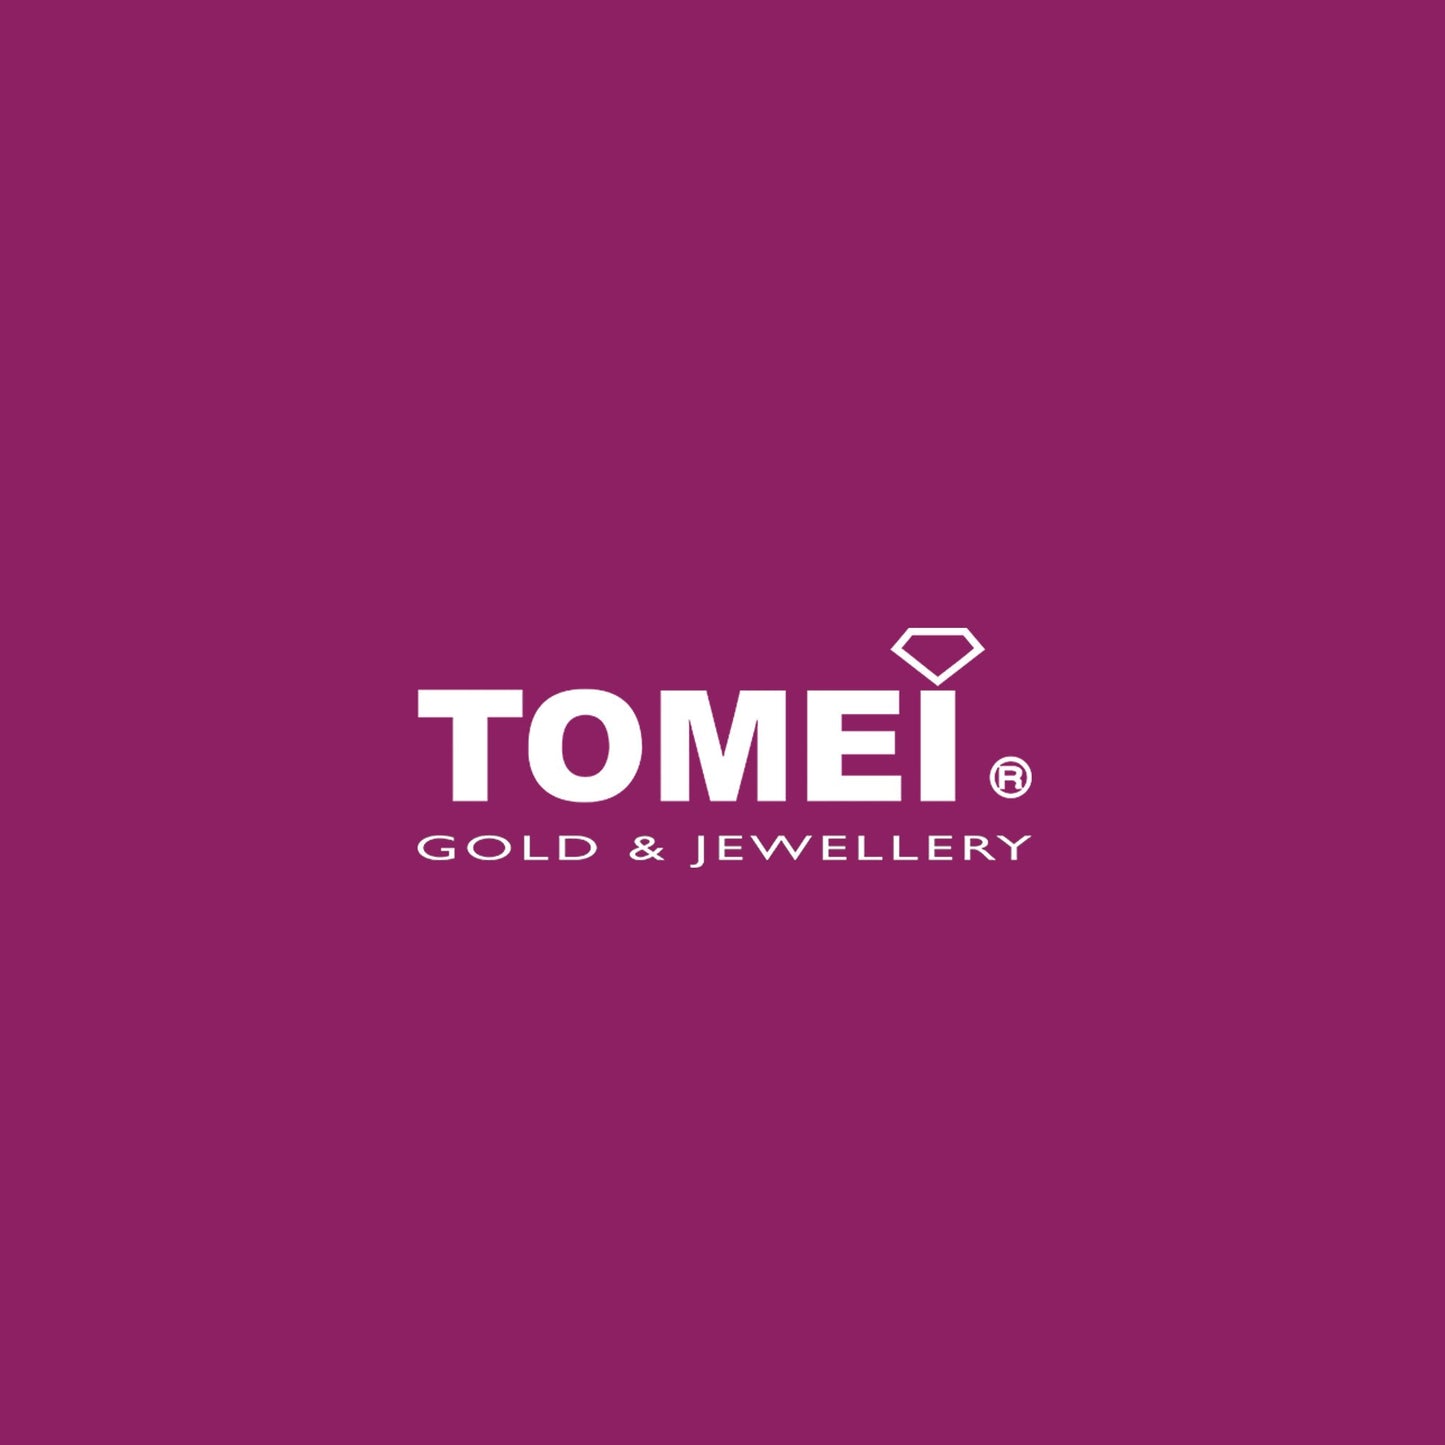 TOMEI Precious Gift Diamond Ring, White Gold 375